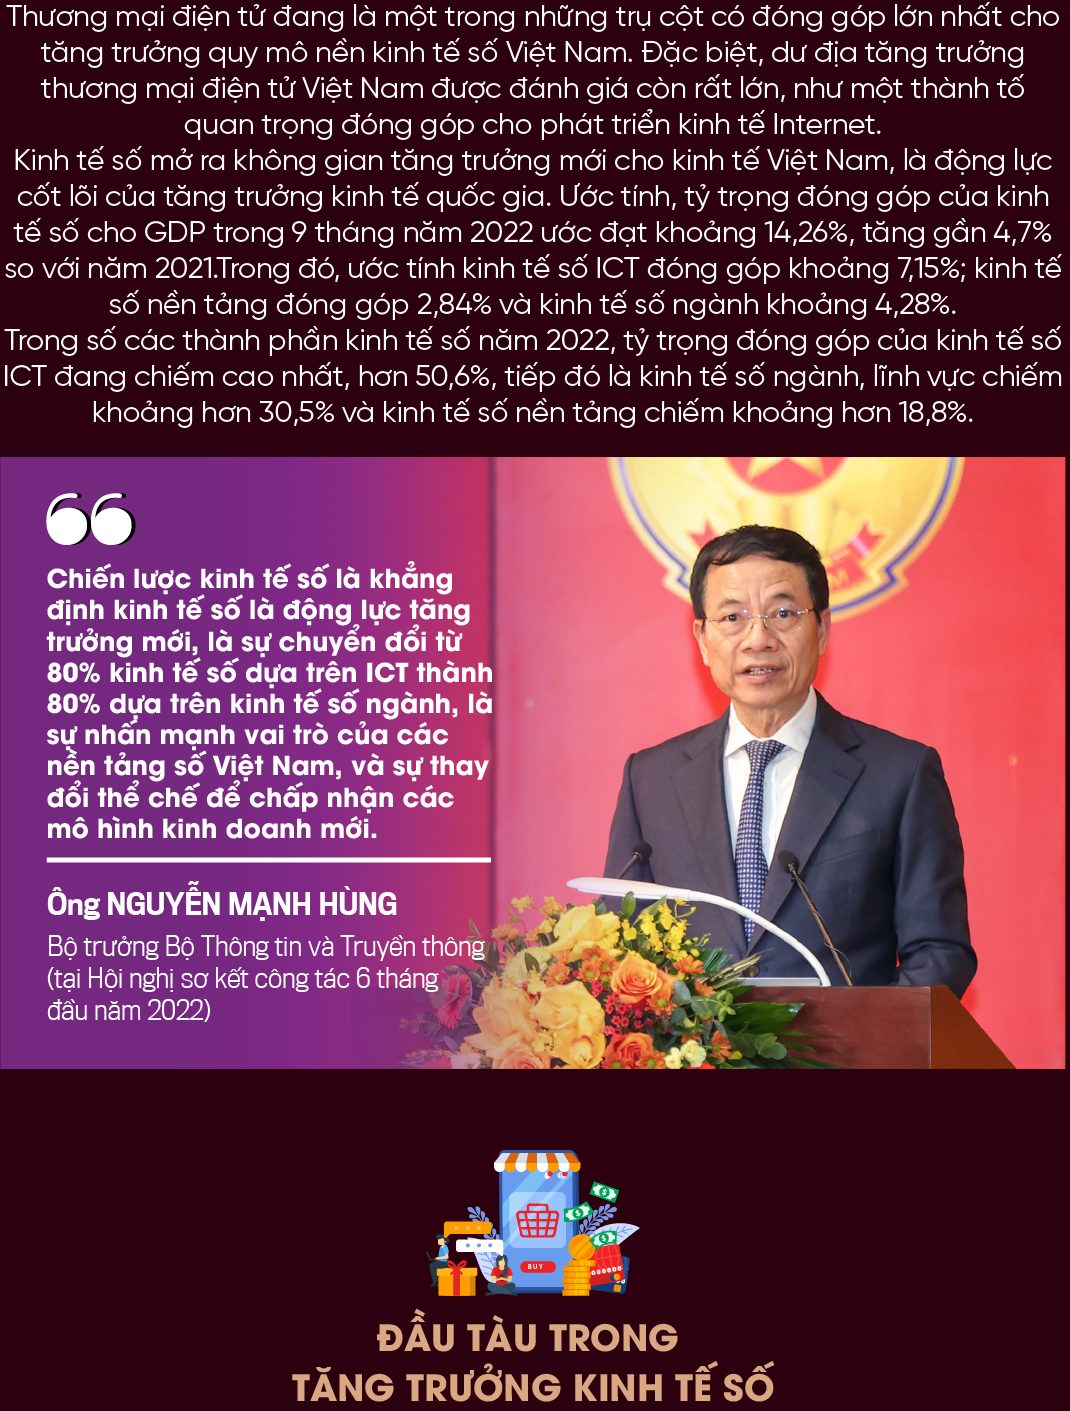 Thương mại điện tử Việt Nam ước đạt 39 tỉ đô la vào năm 2025  Tạp chí Kinh  tế Sài Gòn